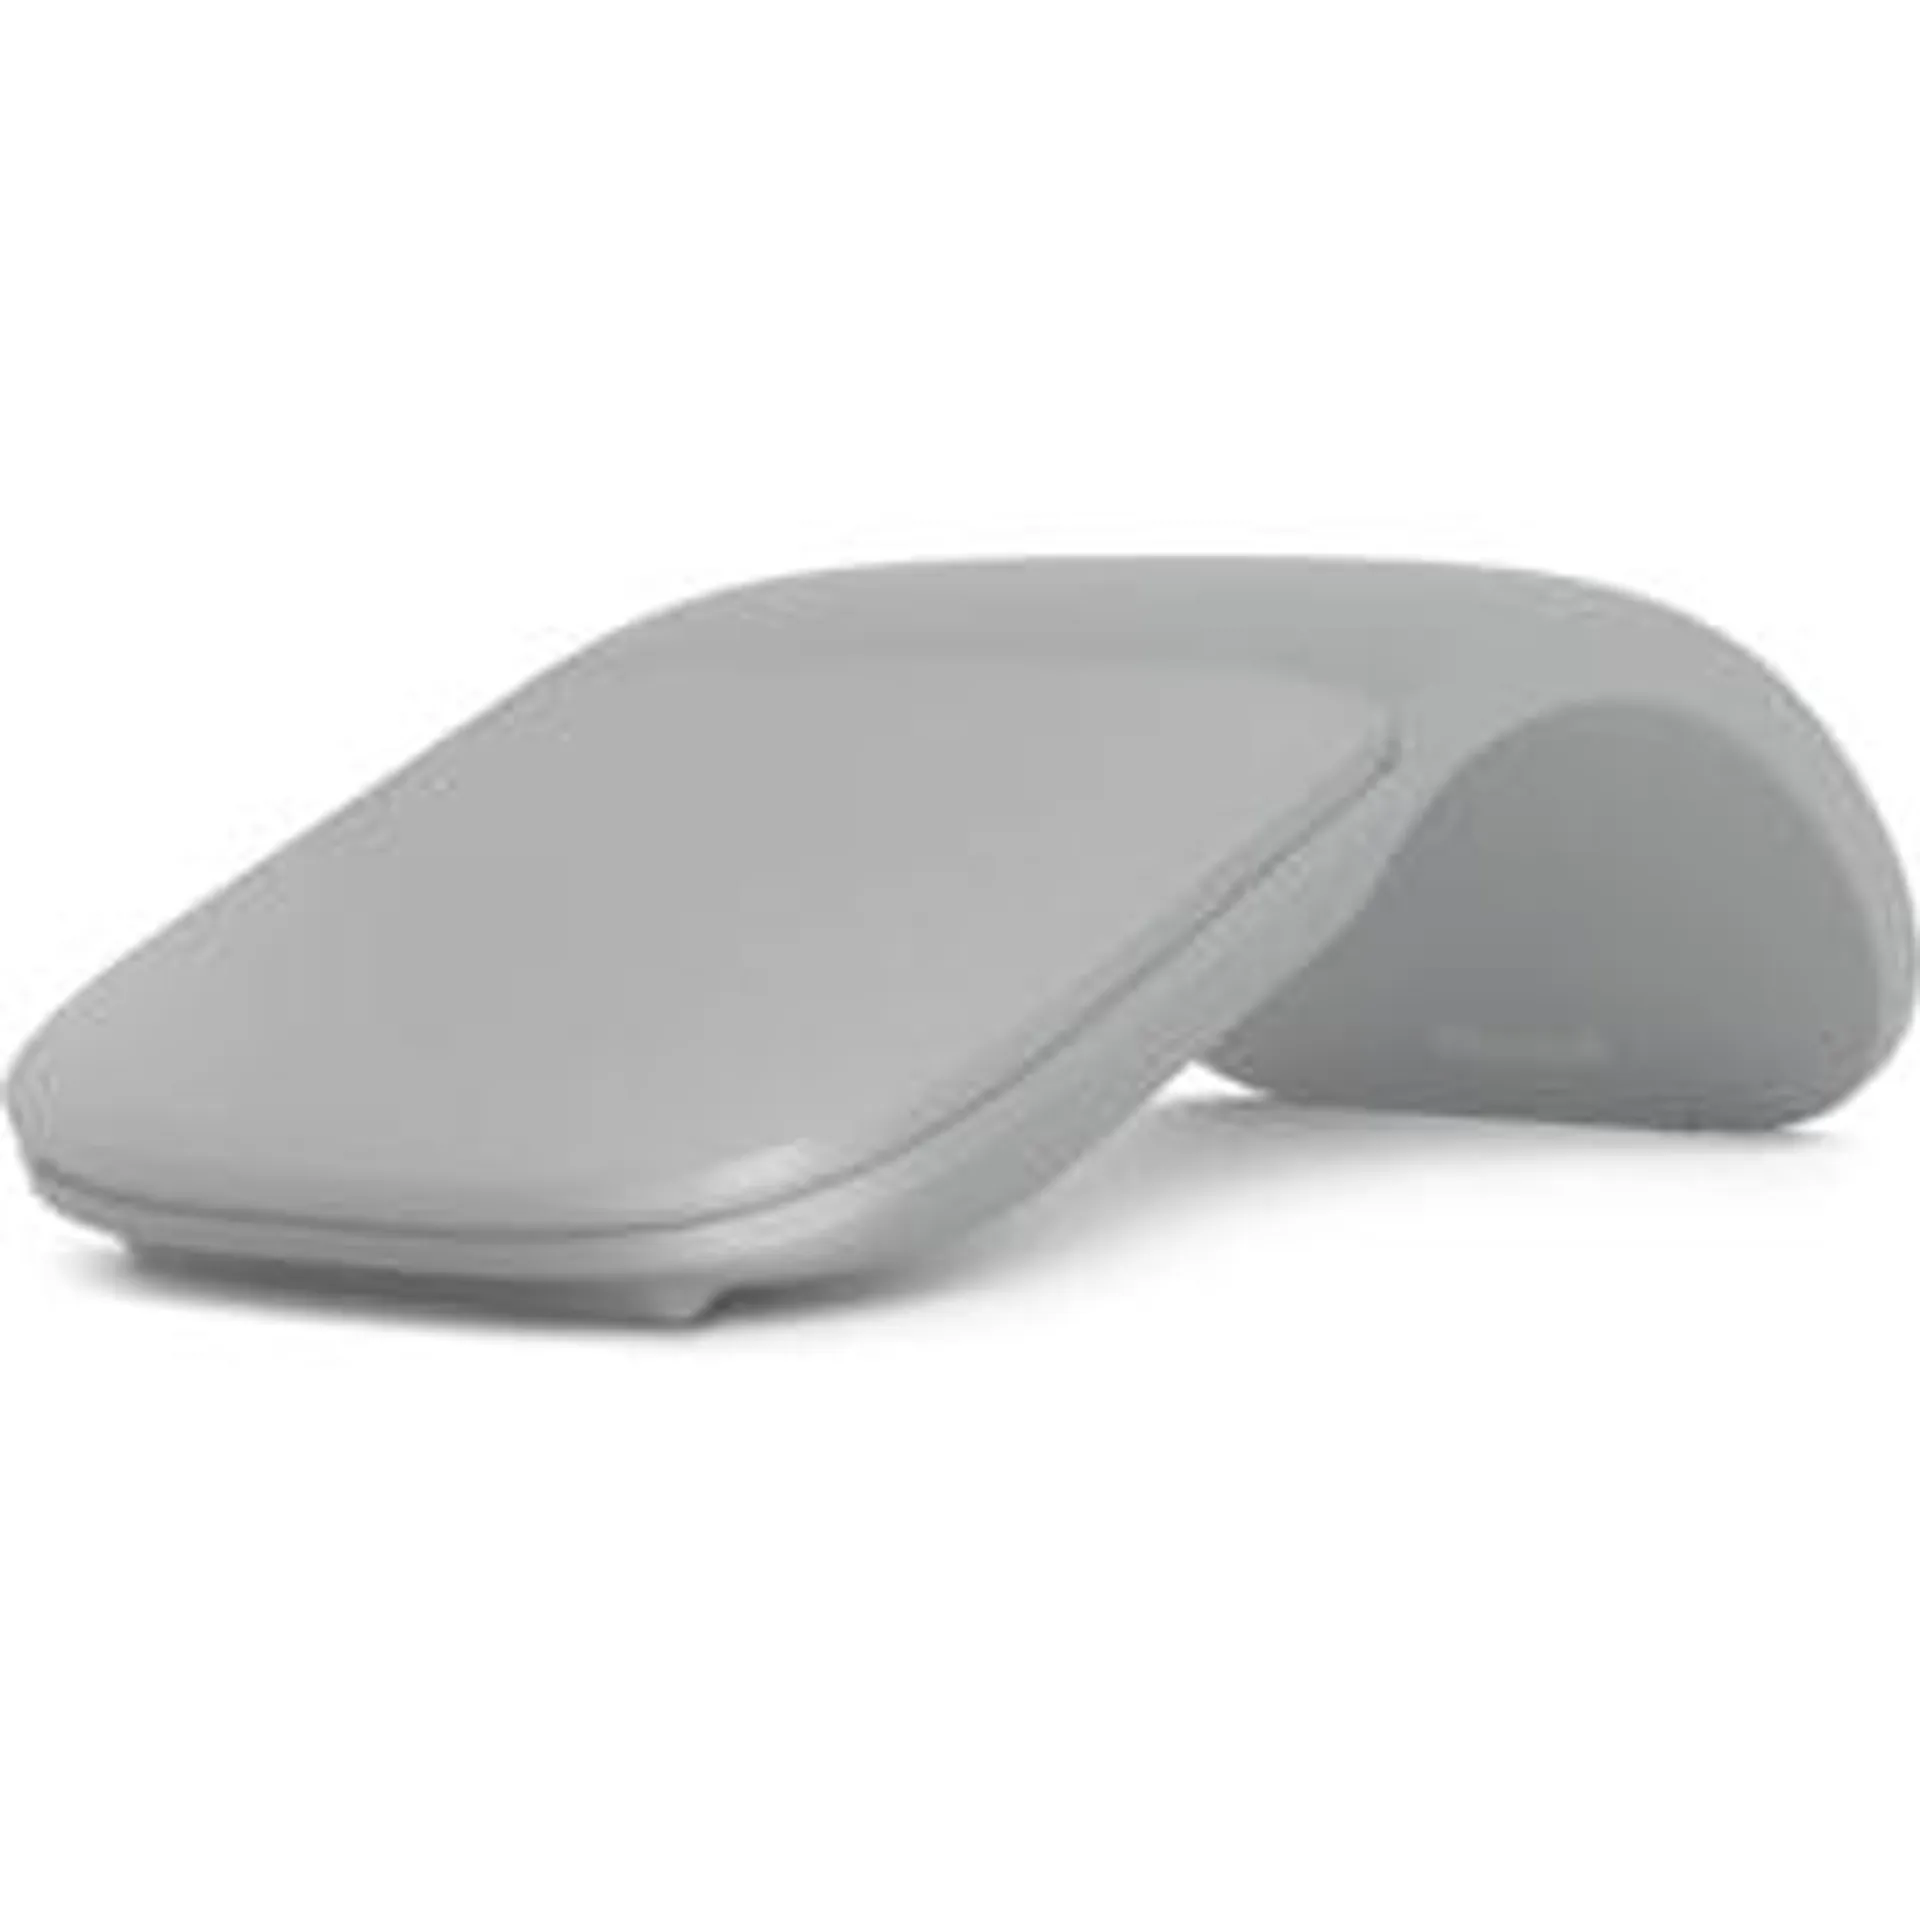 Surface Arc Mouse (gris claro)